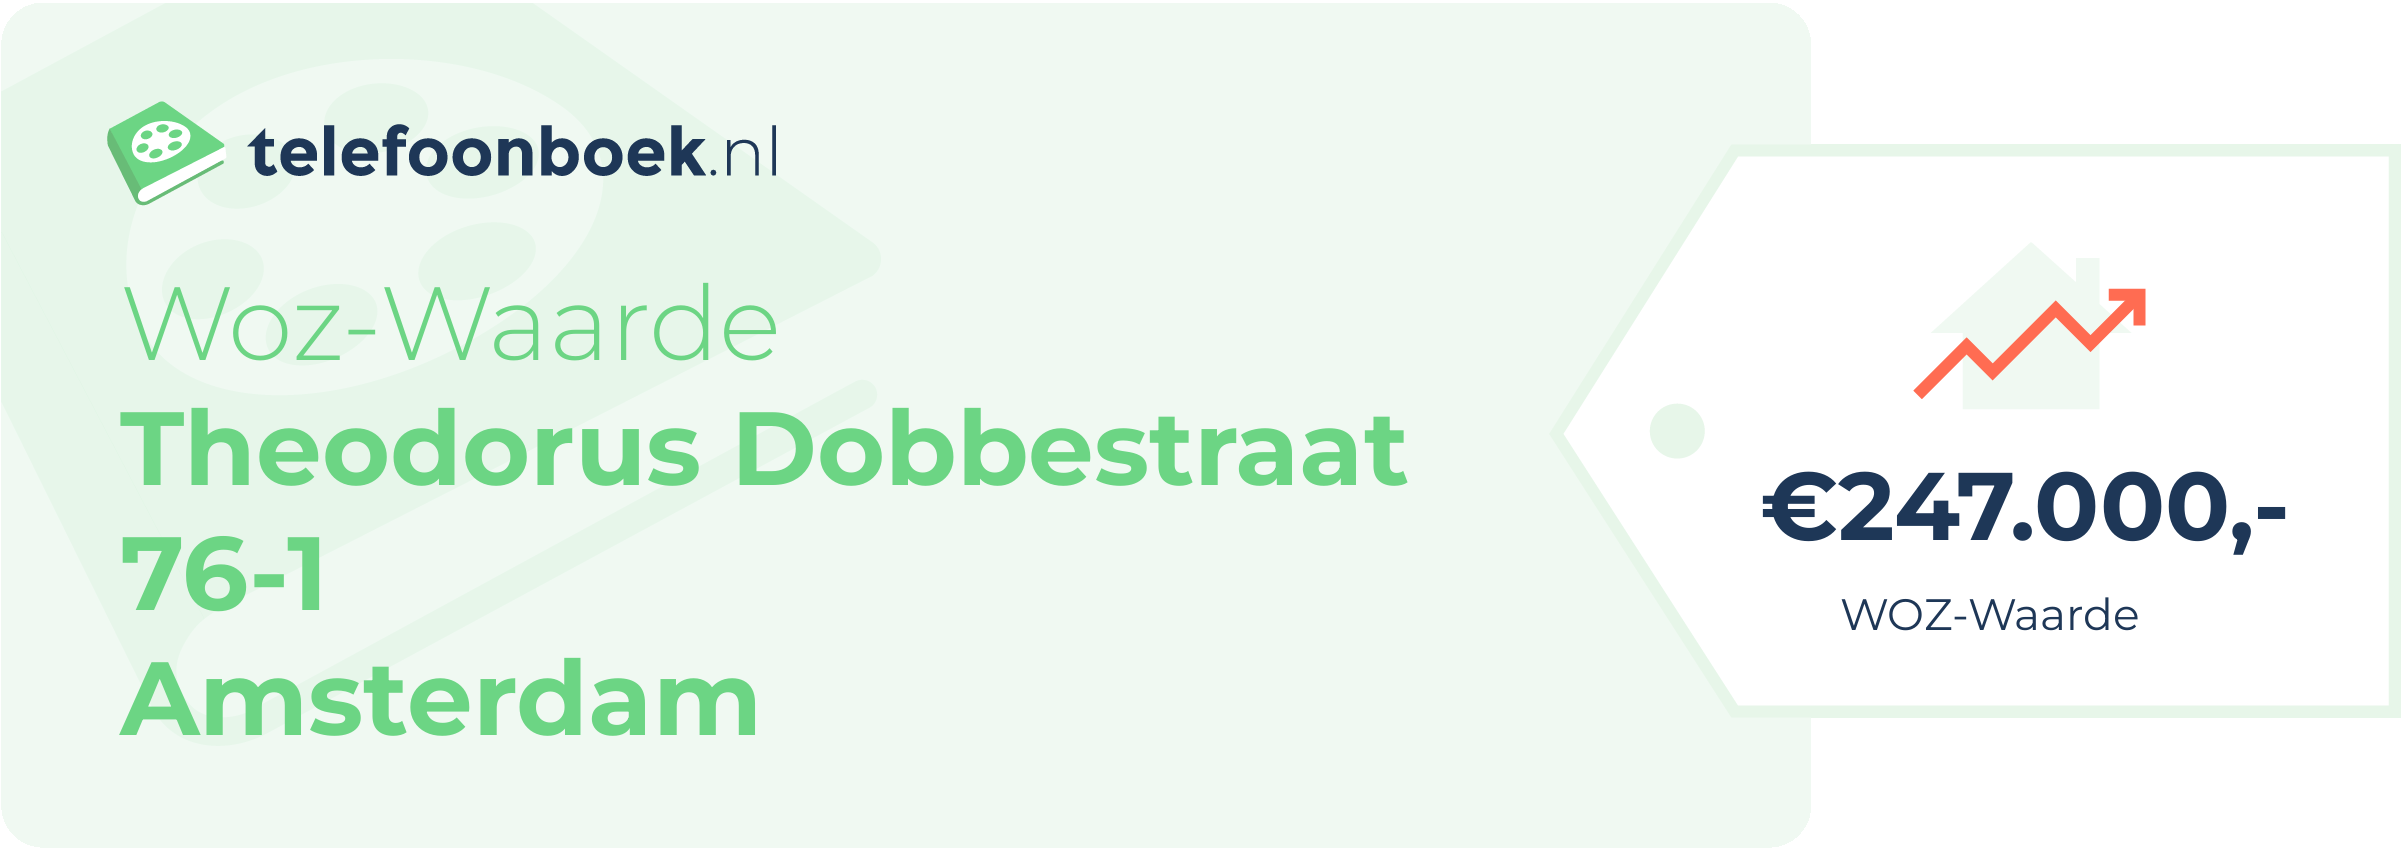 WOZ-waarde Theodorus Dobbestraat 76-1 Amsterdam